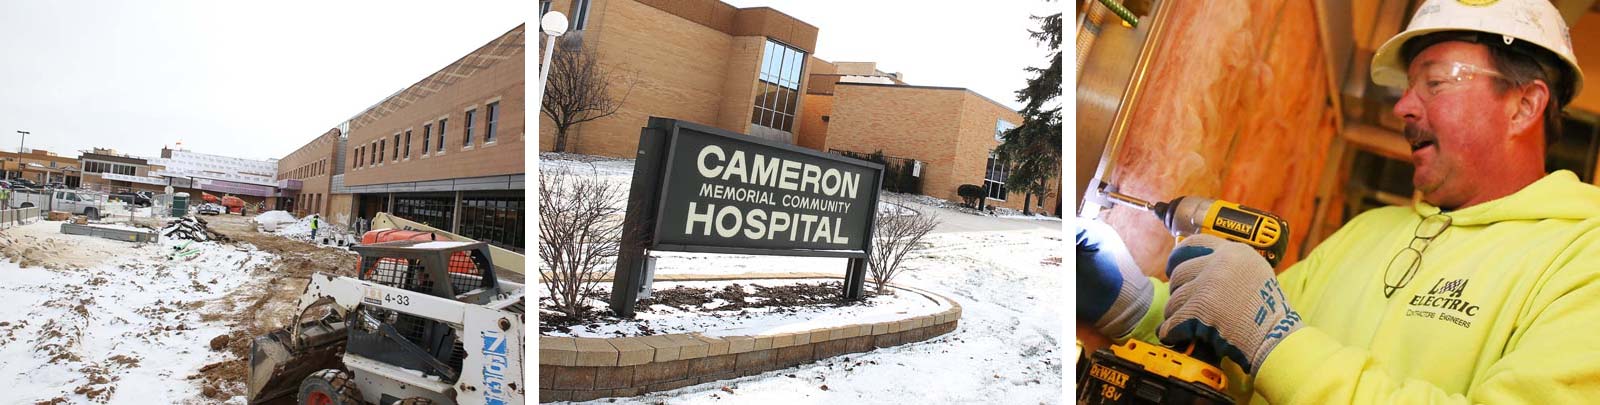 Cameron Hospital | L-A Electric | Electrical Contractors ...